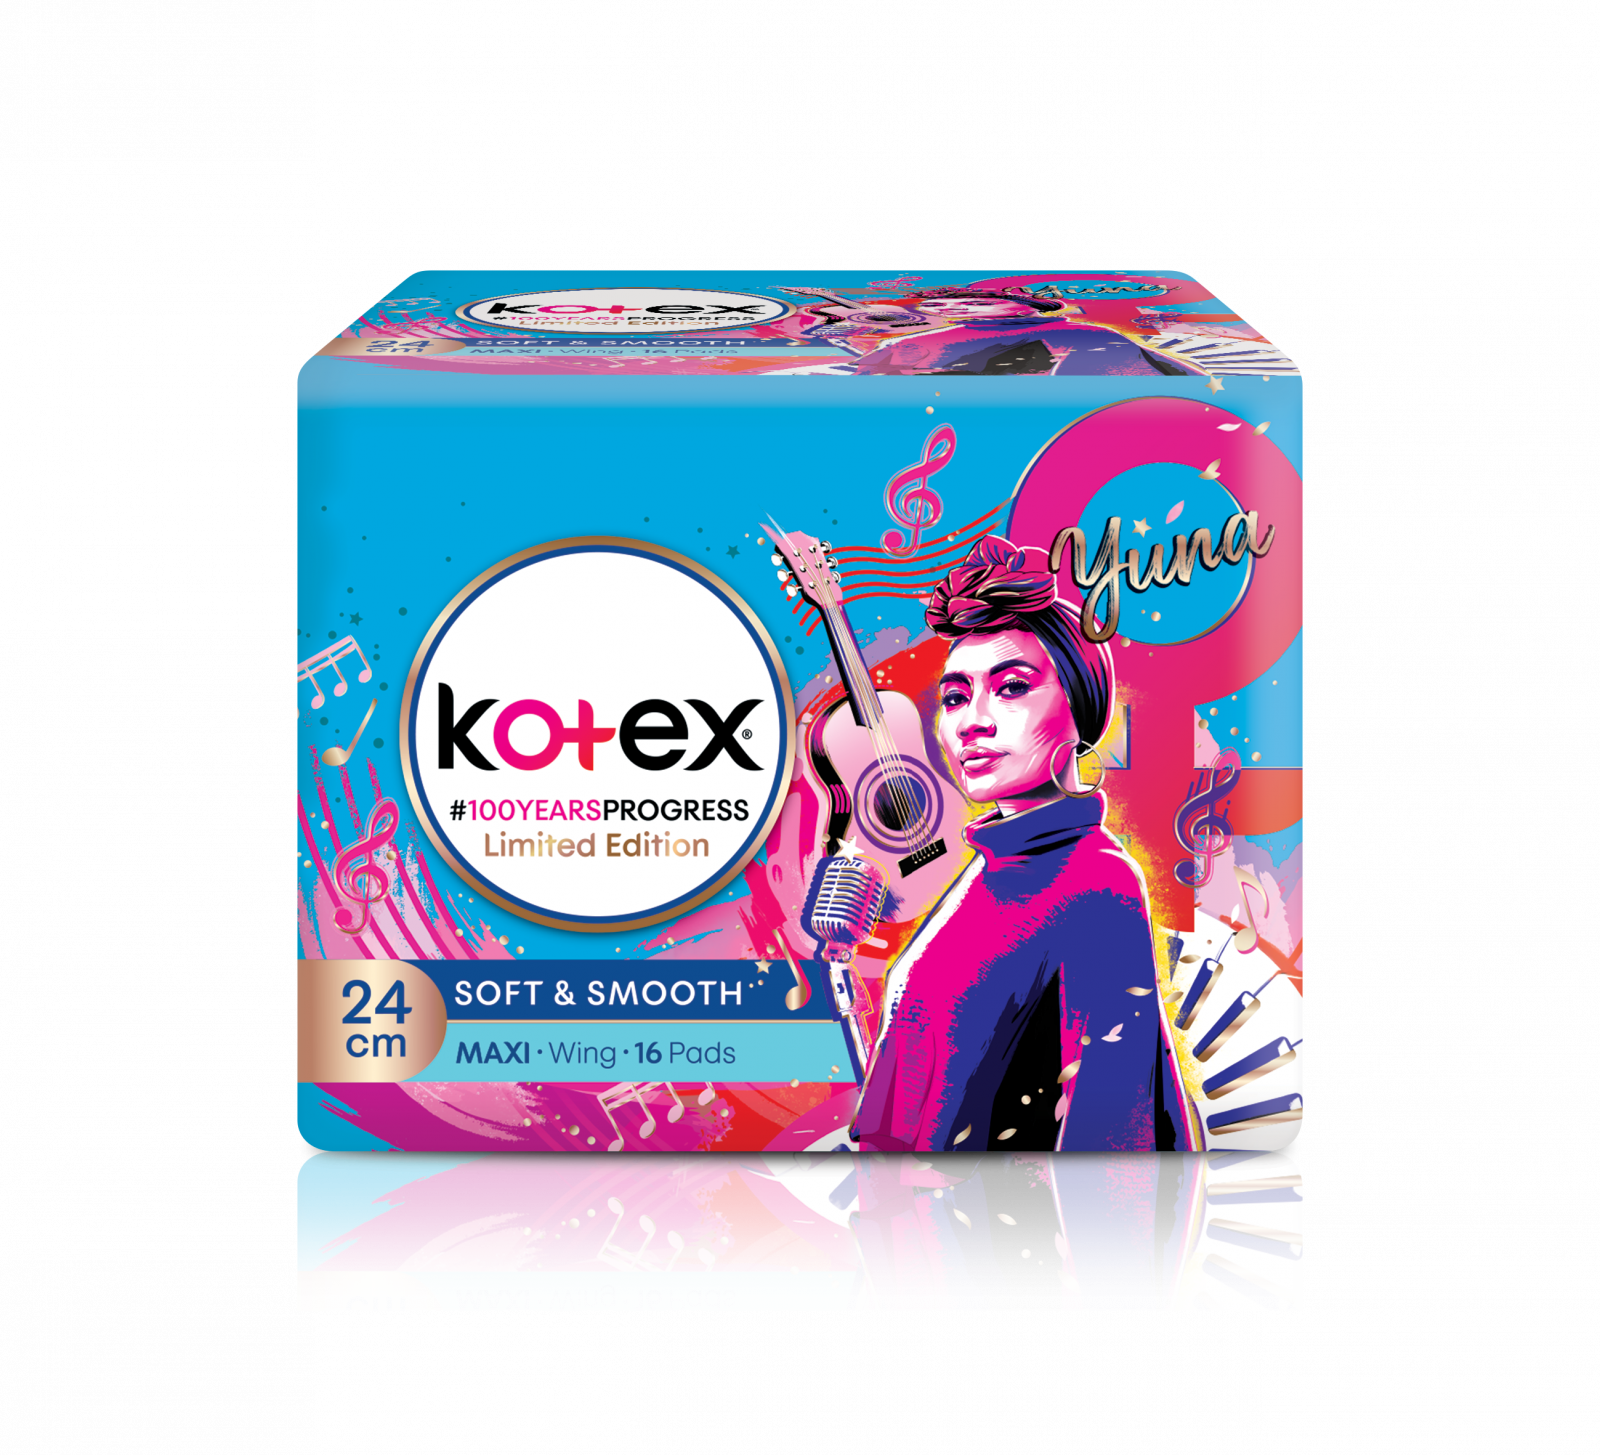 Kotex Limited Edition Packshot Yuna